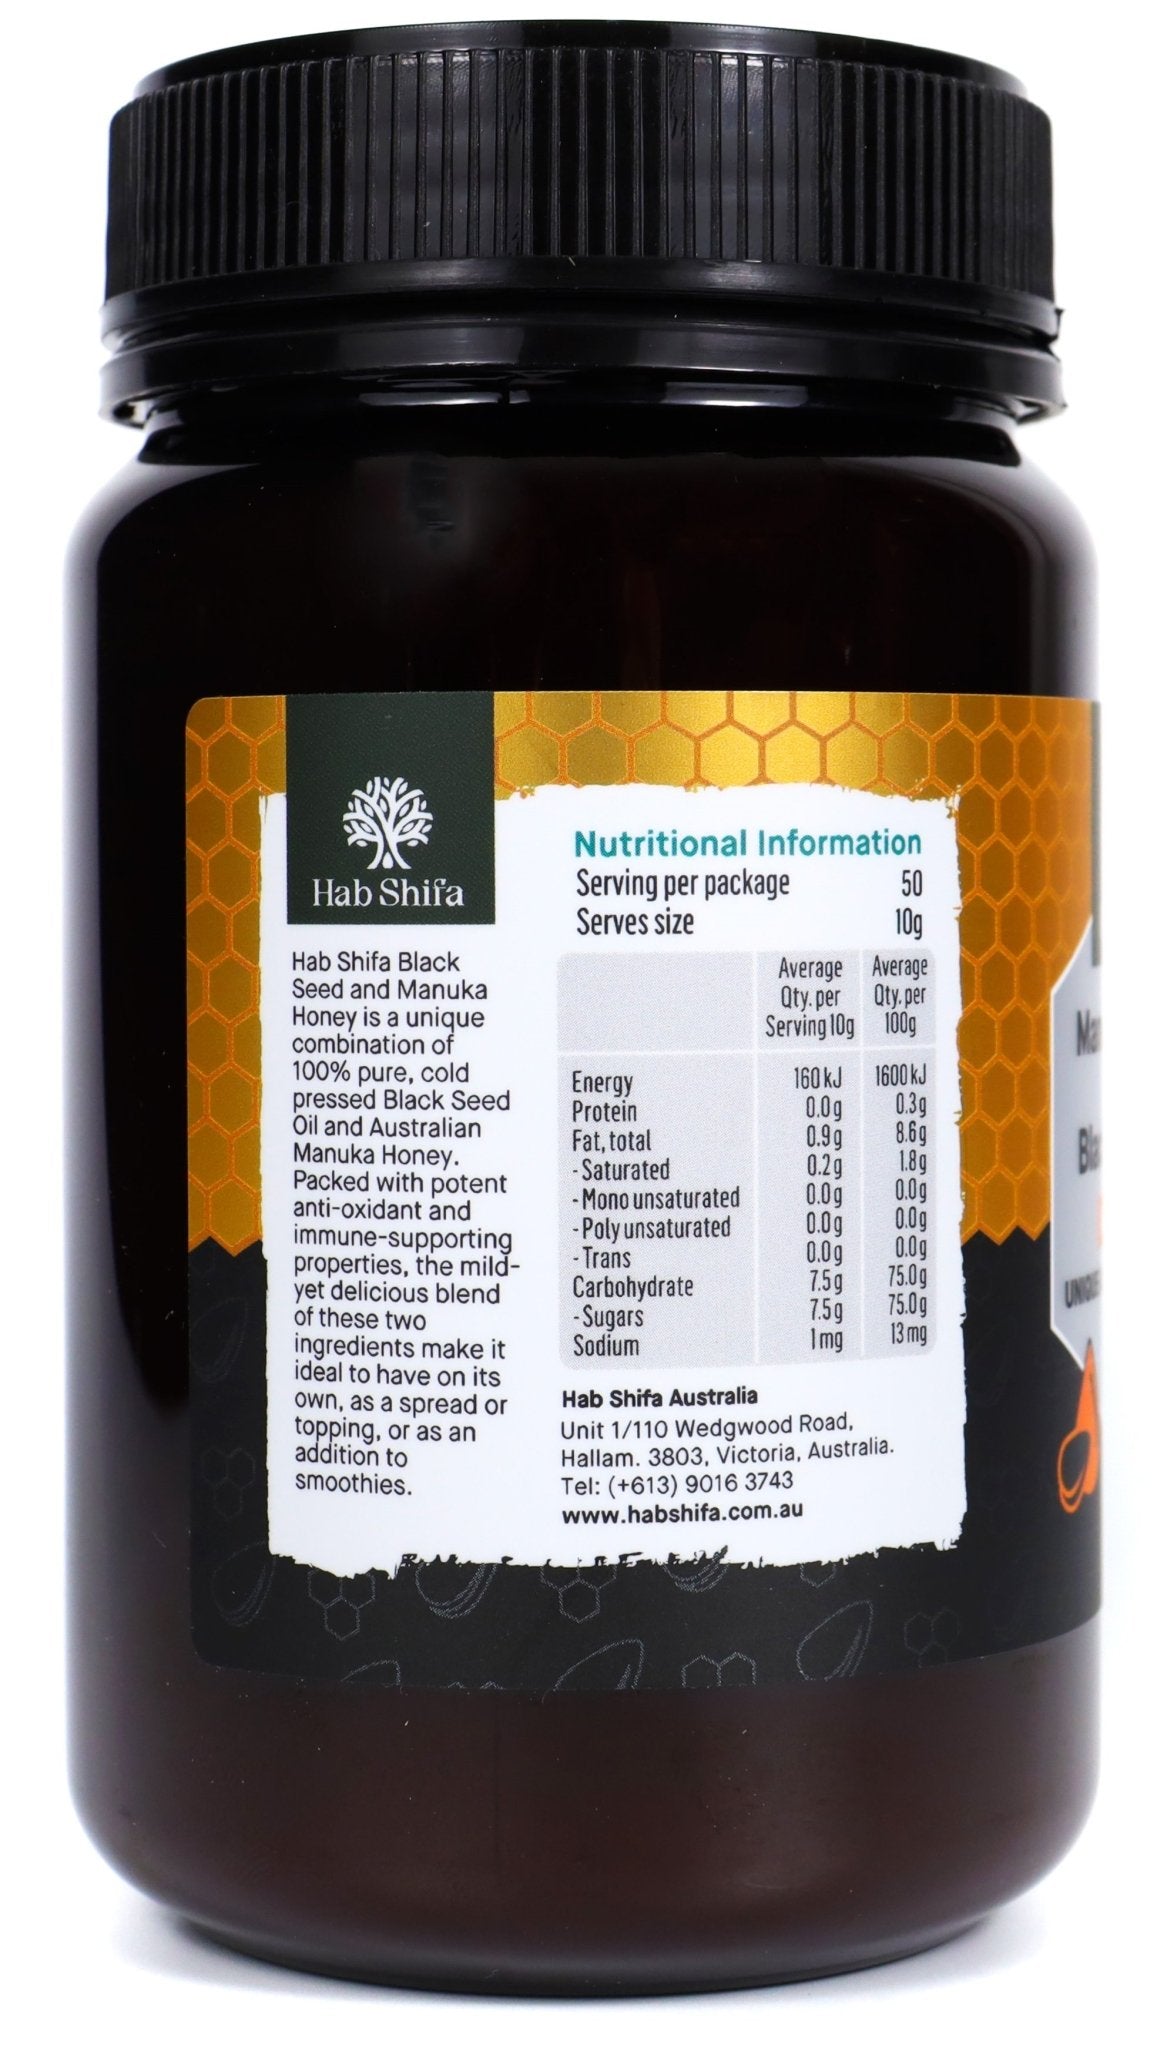 Manuka Honey (MGO 30+) with Black Seed Oil 500g - Hab Shifa